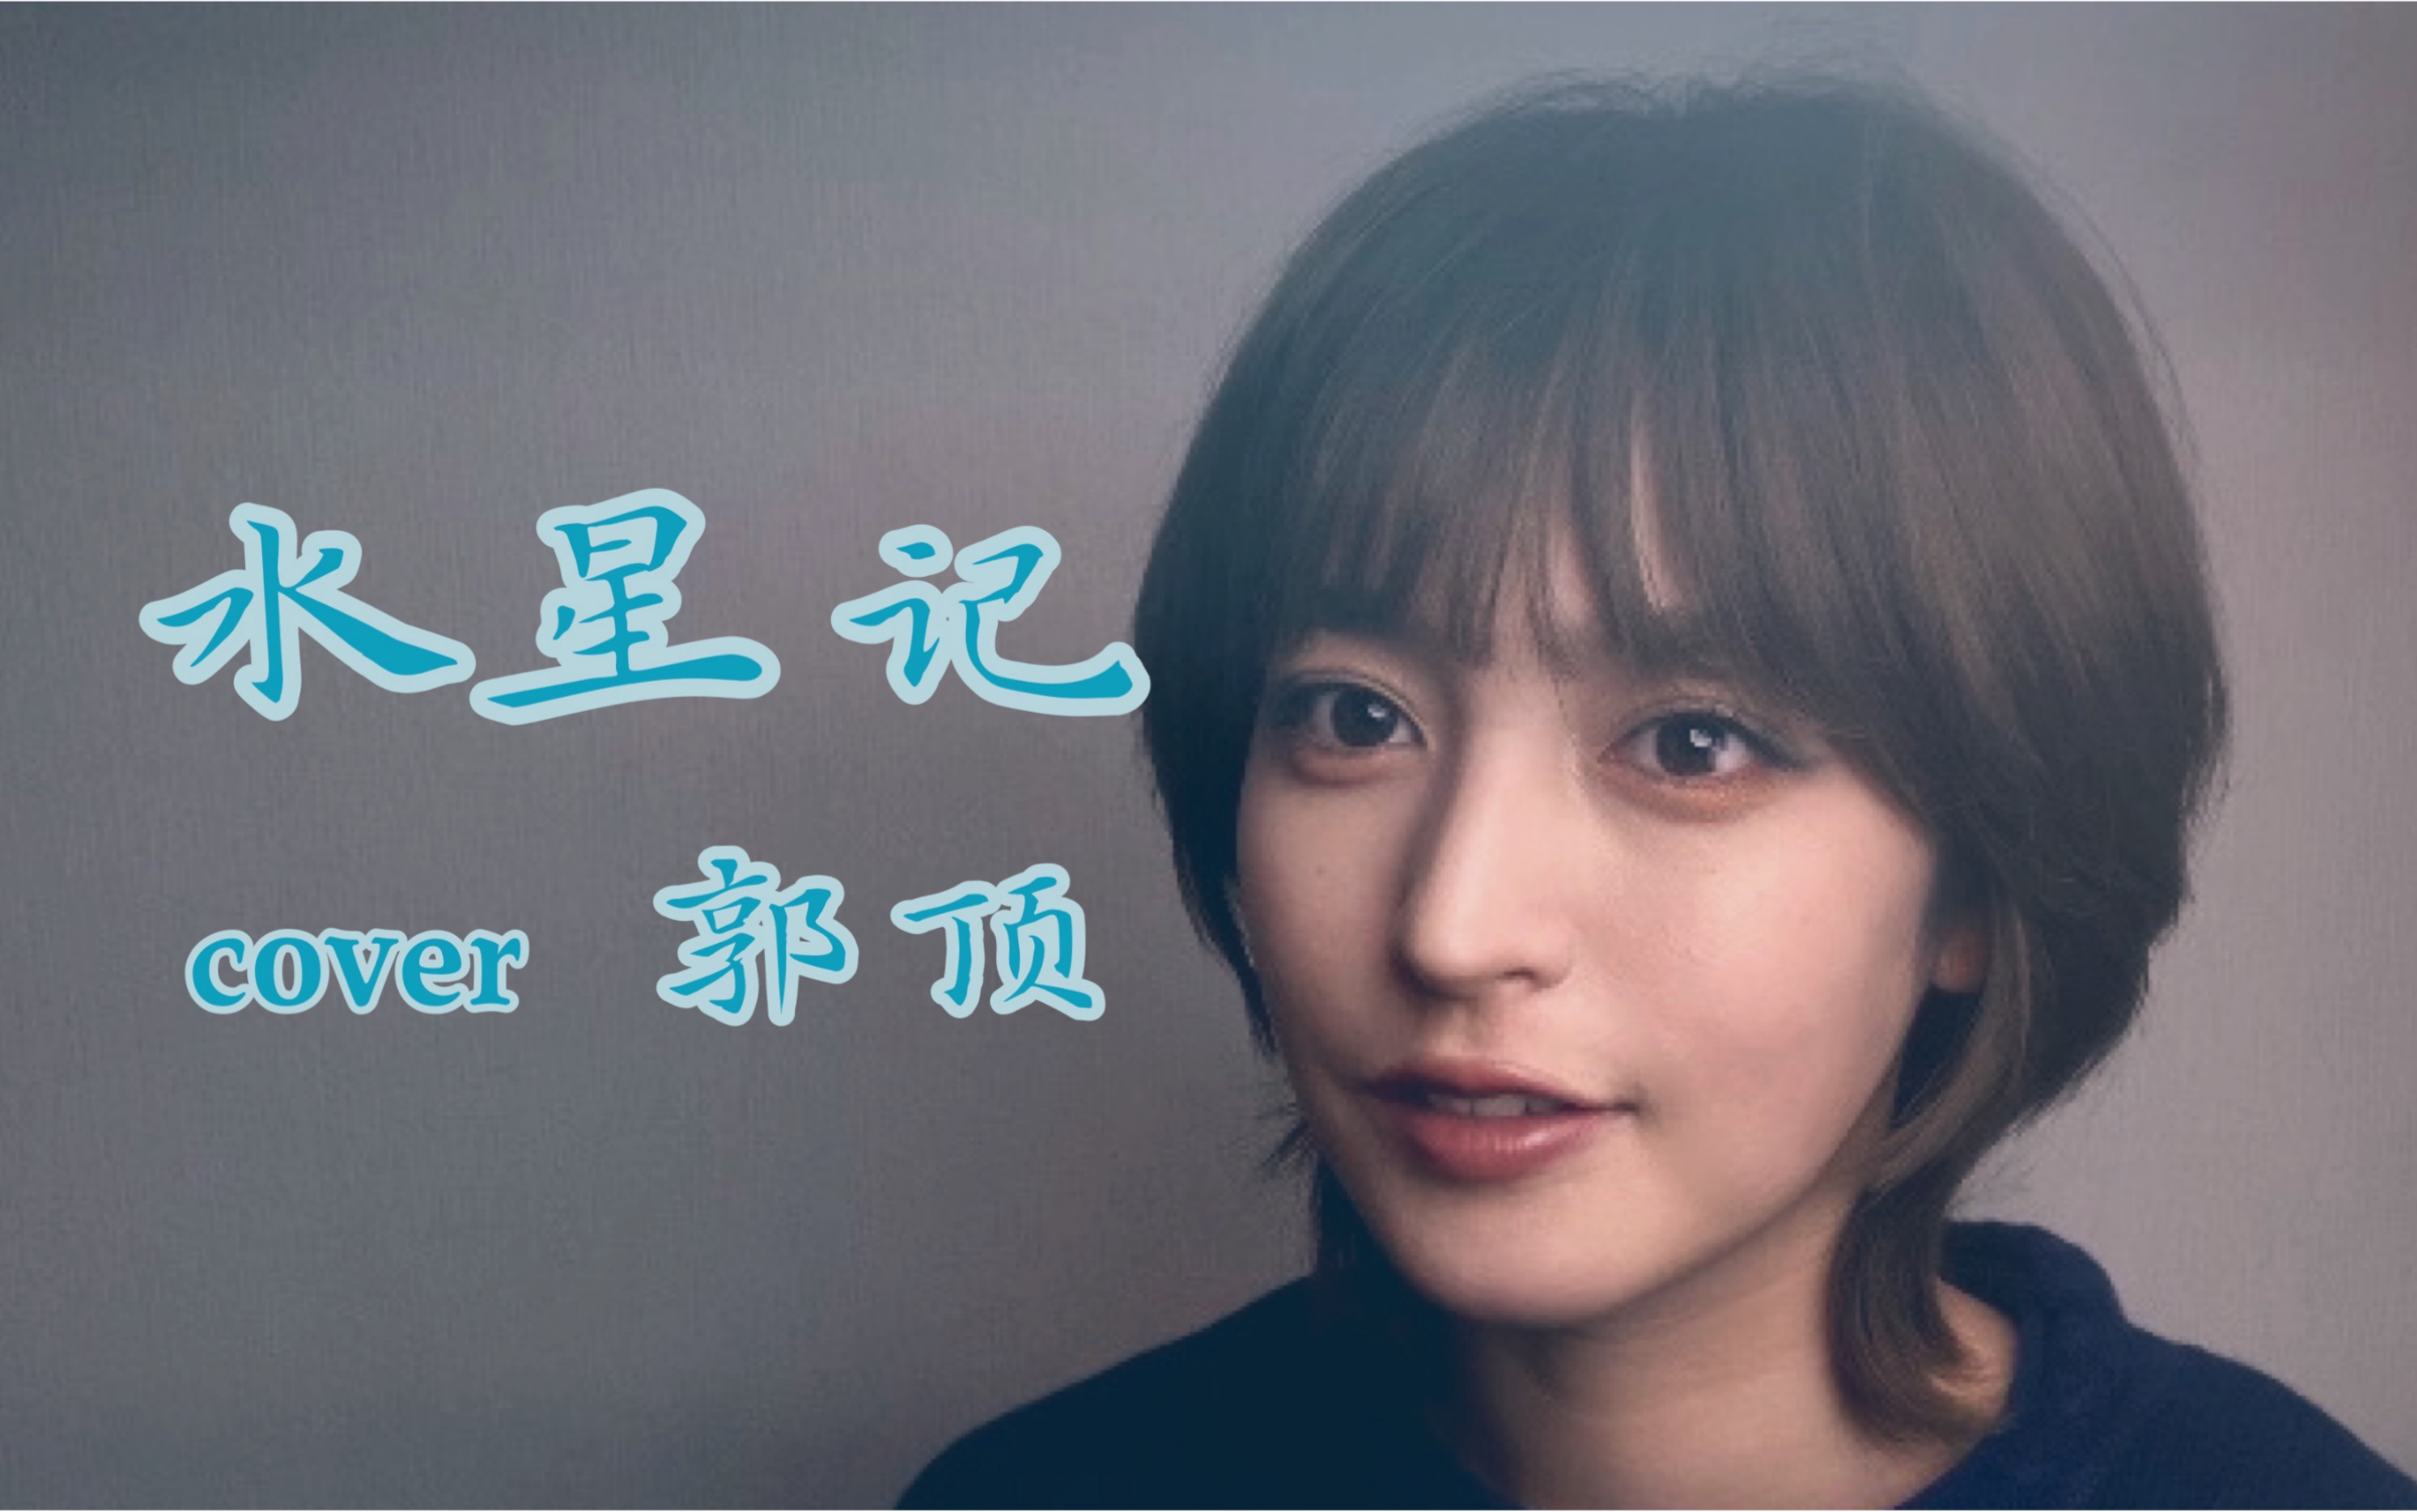 《水星记》翻唱(cover郭顶）日本女生翻唱中文歌